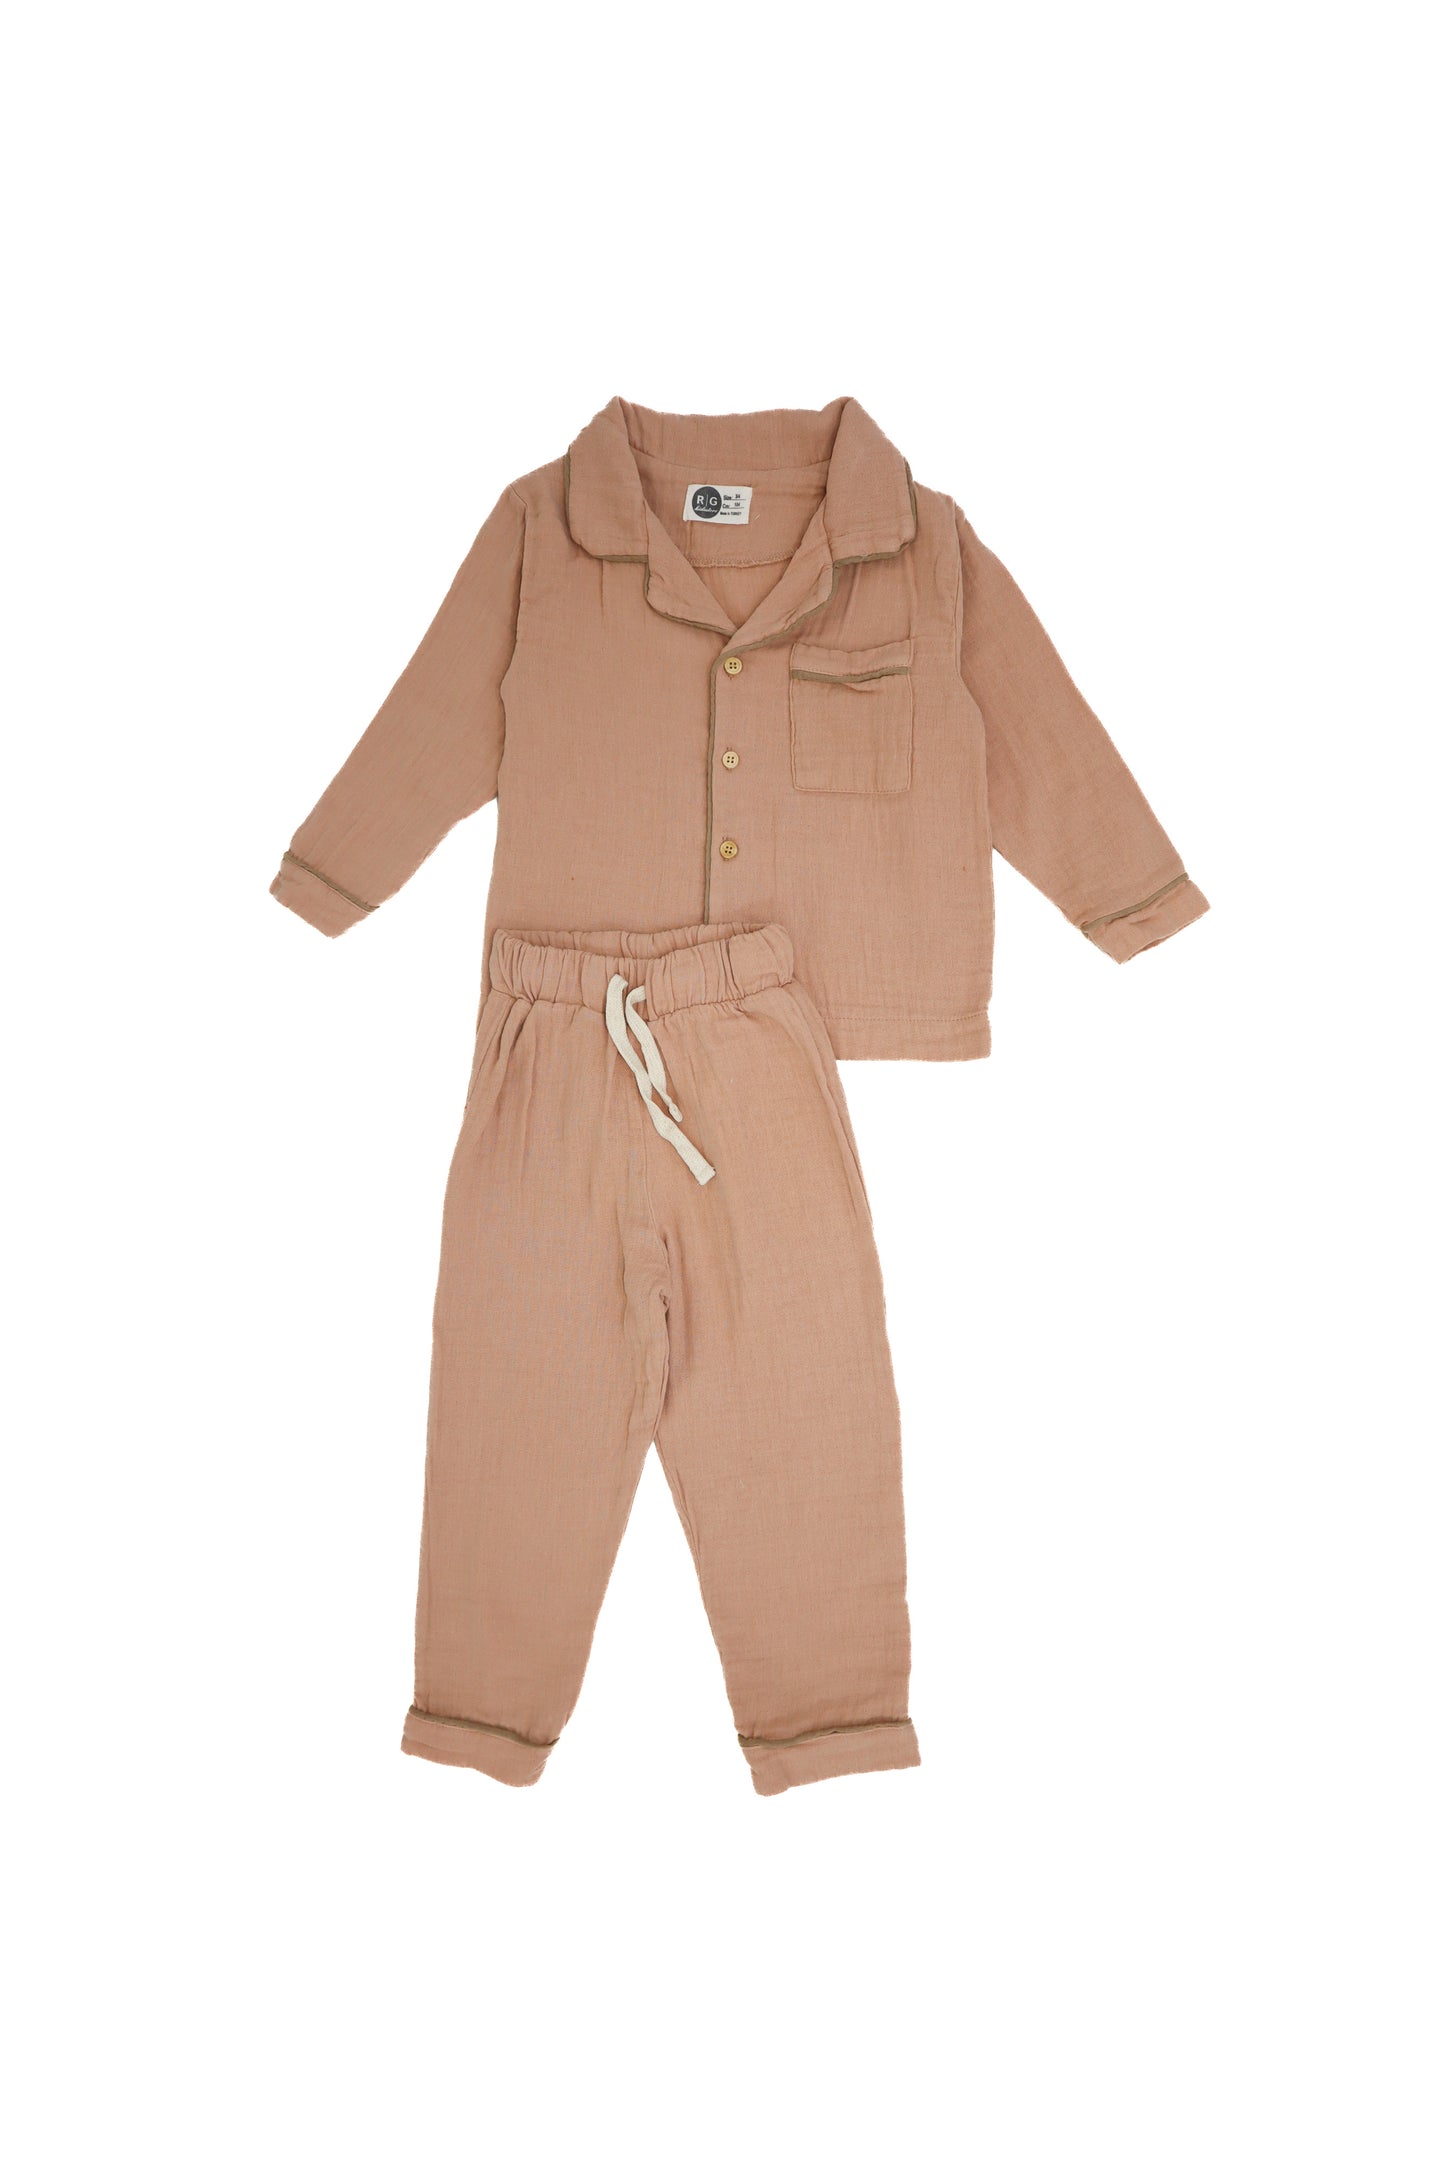 Chıldren's 100% Muslın Pajama Set  